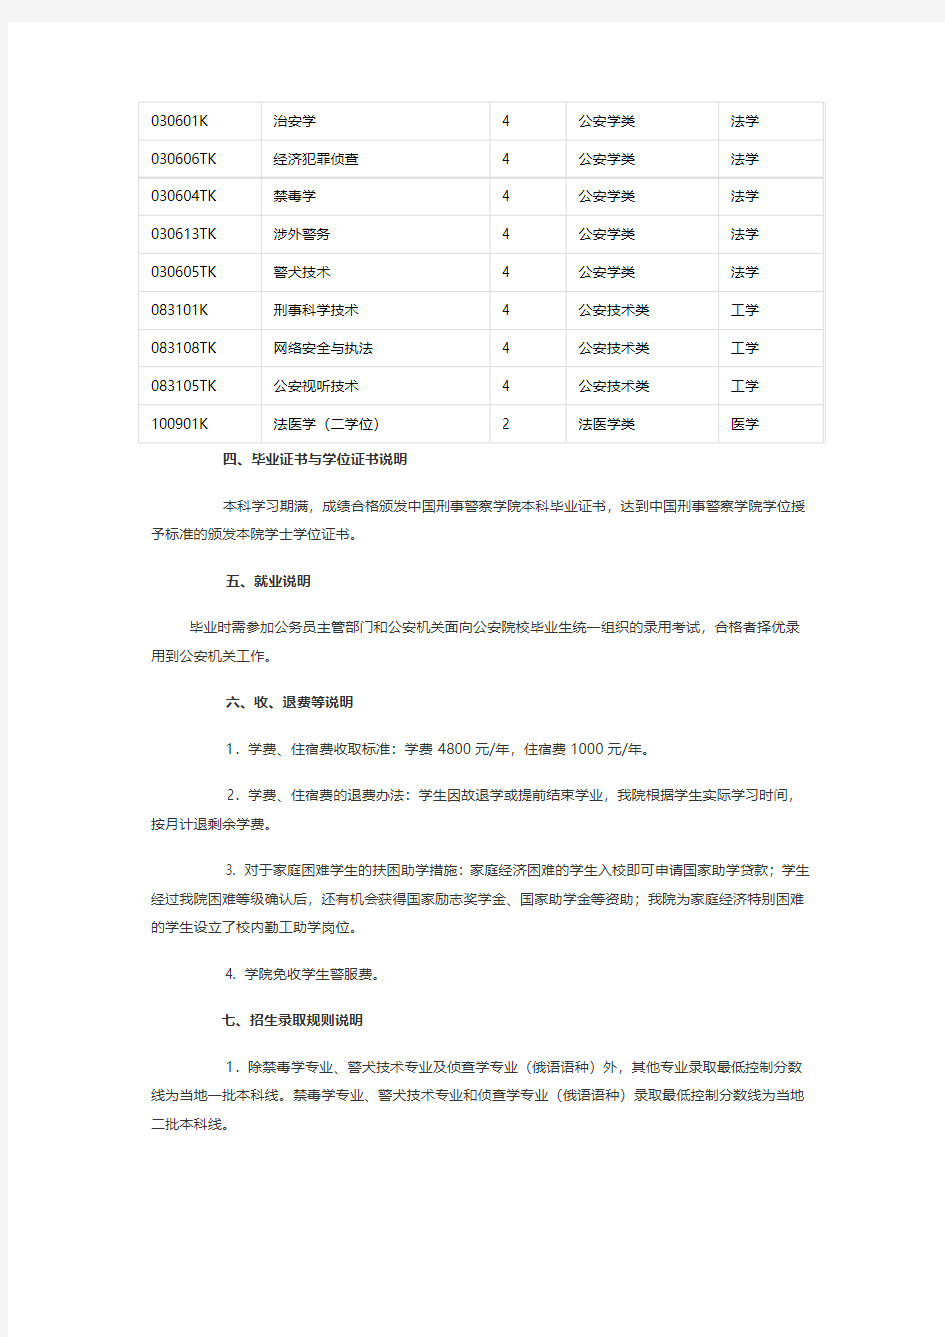 中国刑事警察学院2015年本科生招生章程(已经过主管部门审核)